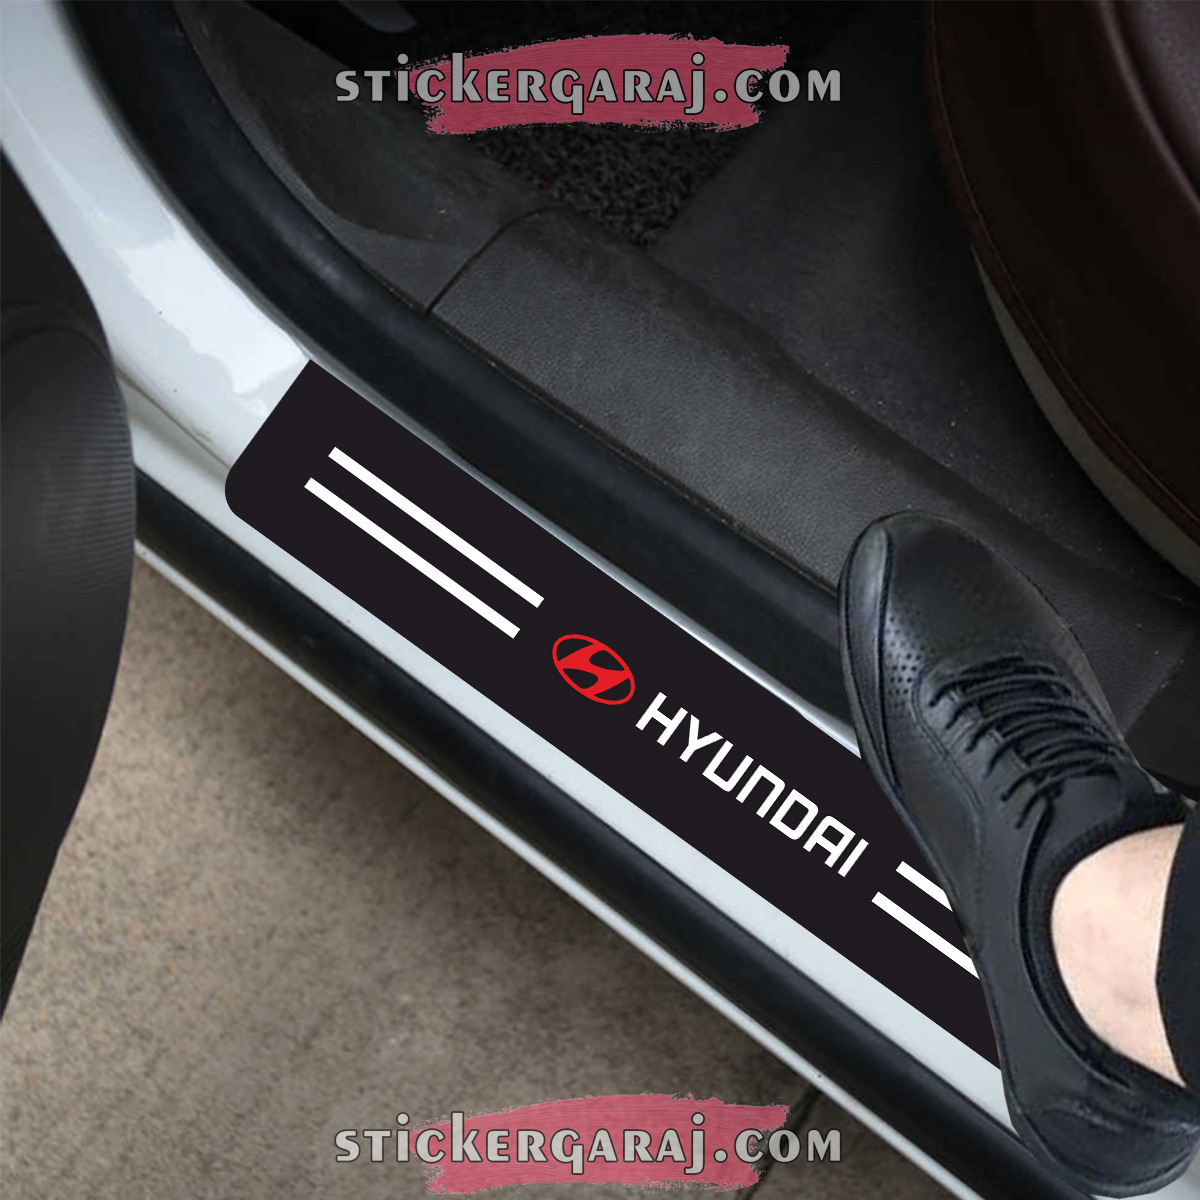 hyundai3 - Hyundai kapı eşiği sticker